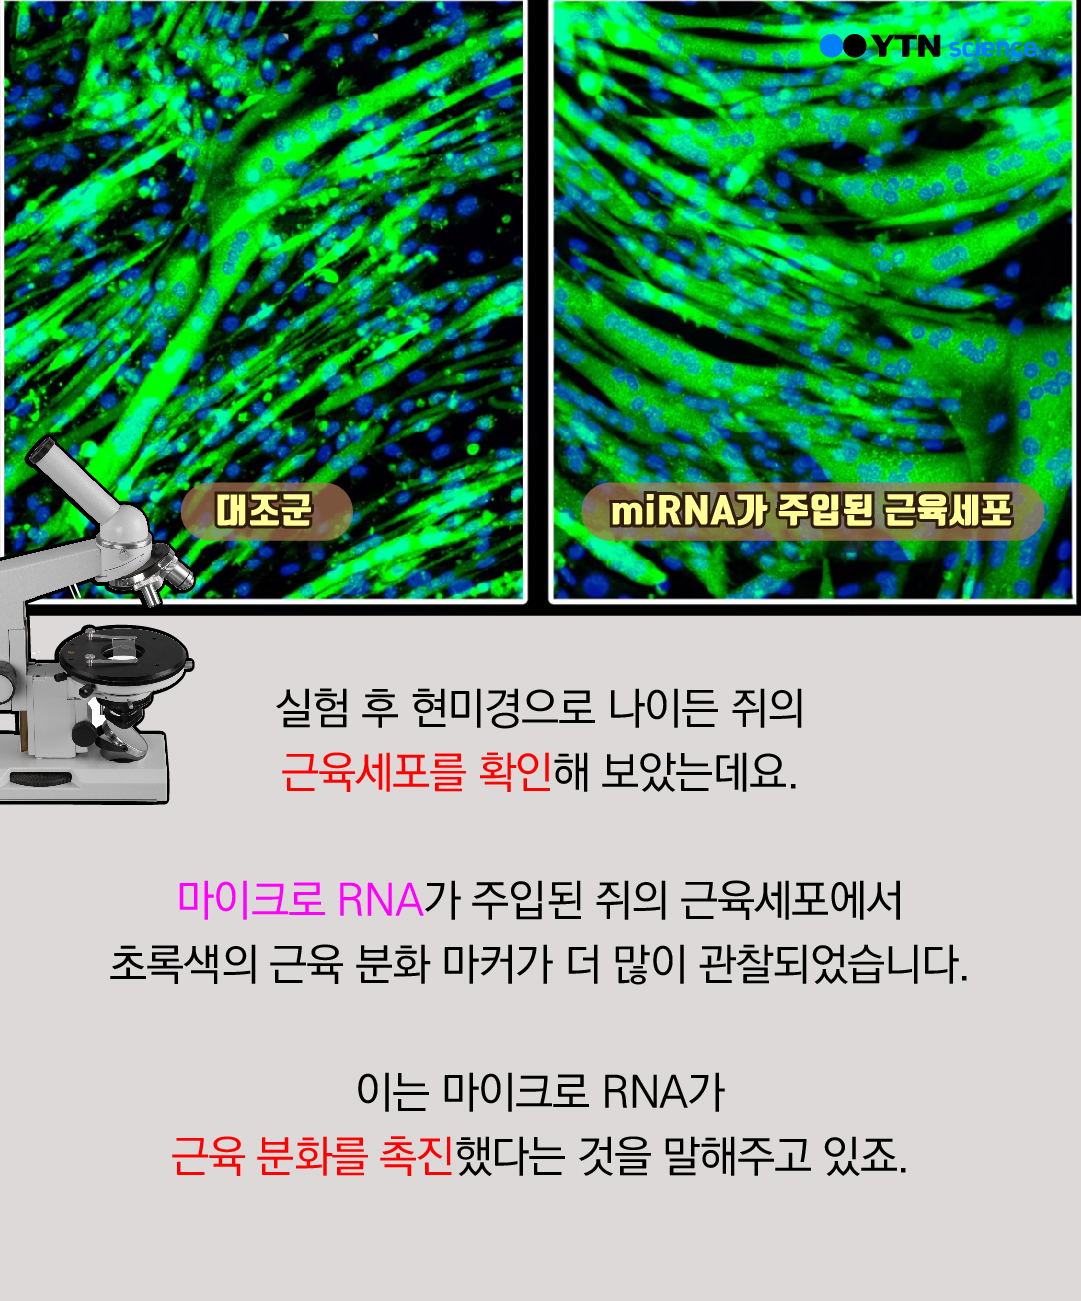 대조군 / ImiRNA가 주입된 근육세포 - 실험 후 현미경으로 나이든 쥐의 근육세포를 확인해 보았는데요. 마이크로 RNA가 주입된 쥐의 근육세포에서 초록색의 근육 분화 마커가 더 많이 관찰되었습니다. 이는 마이크로 RNA가 근육 분화를 촉진했다는 것을 말해주고 있죠.